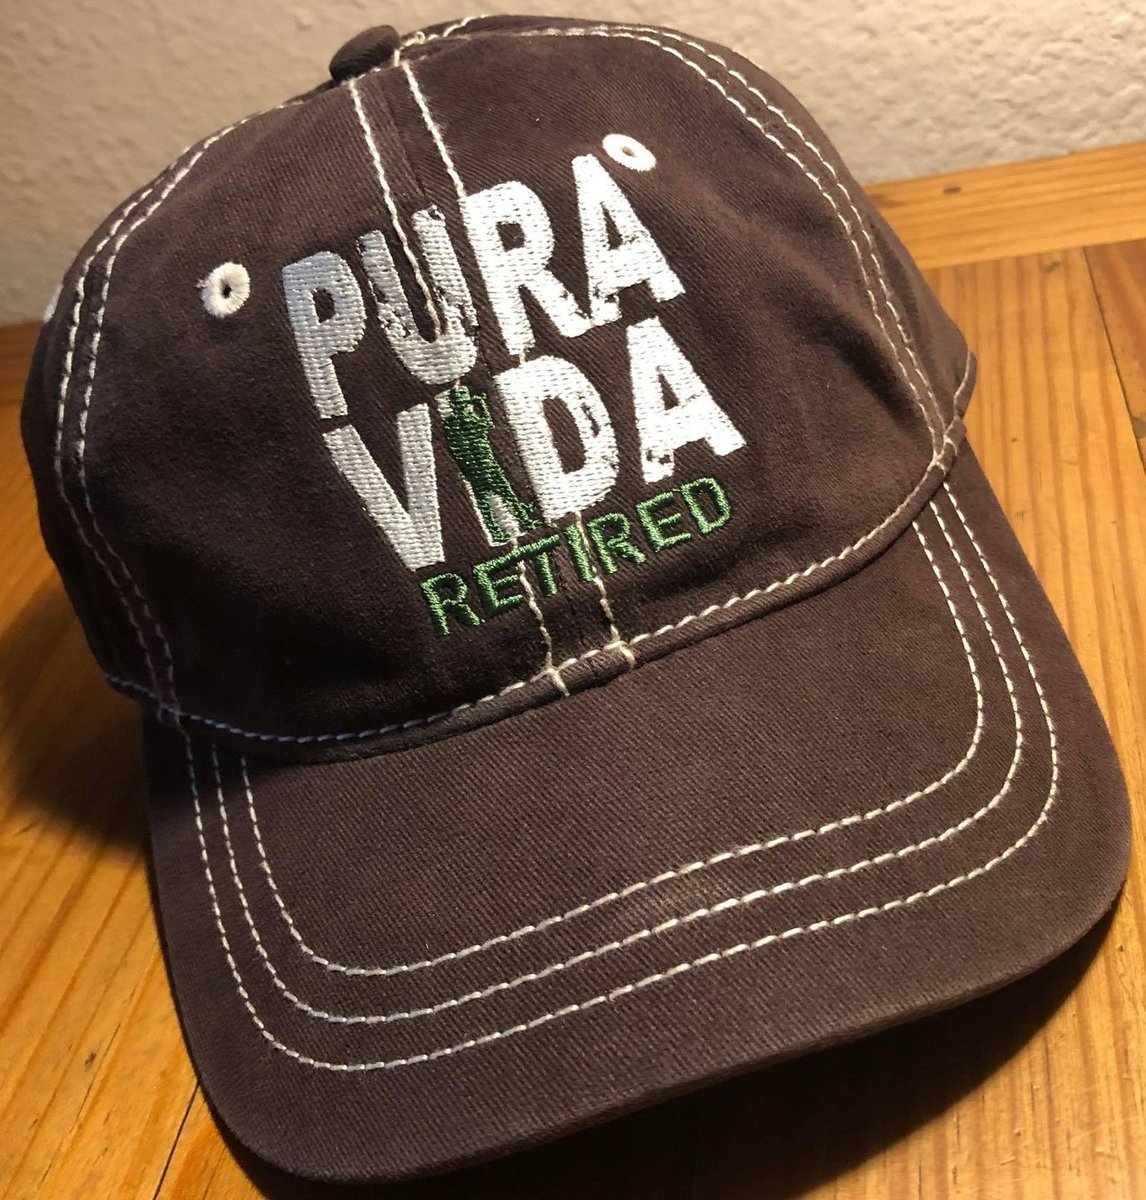 PURA VIDA RETIRED ~ HATS  OLD PATROL HQ / FIERCE 5%